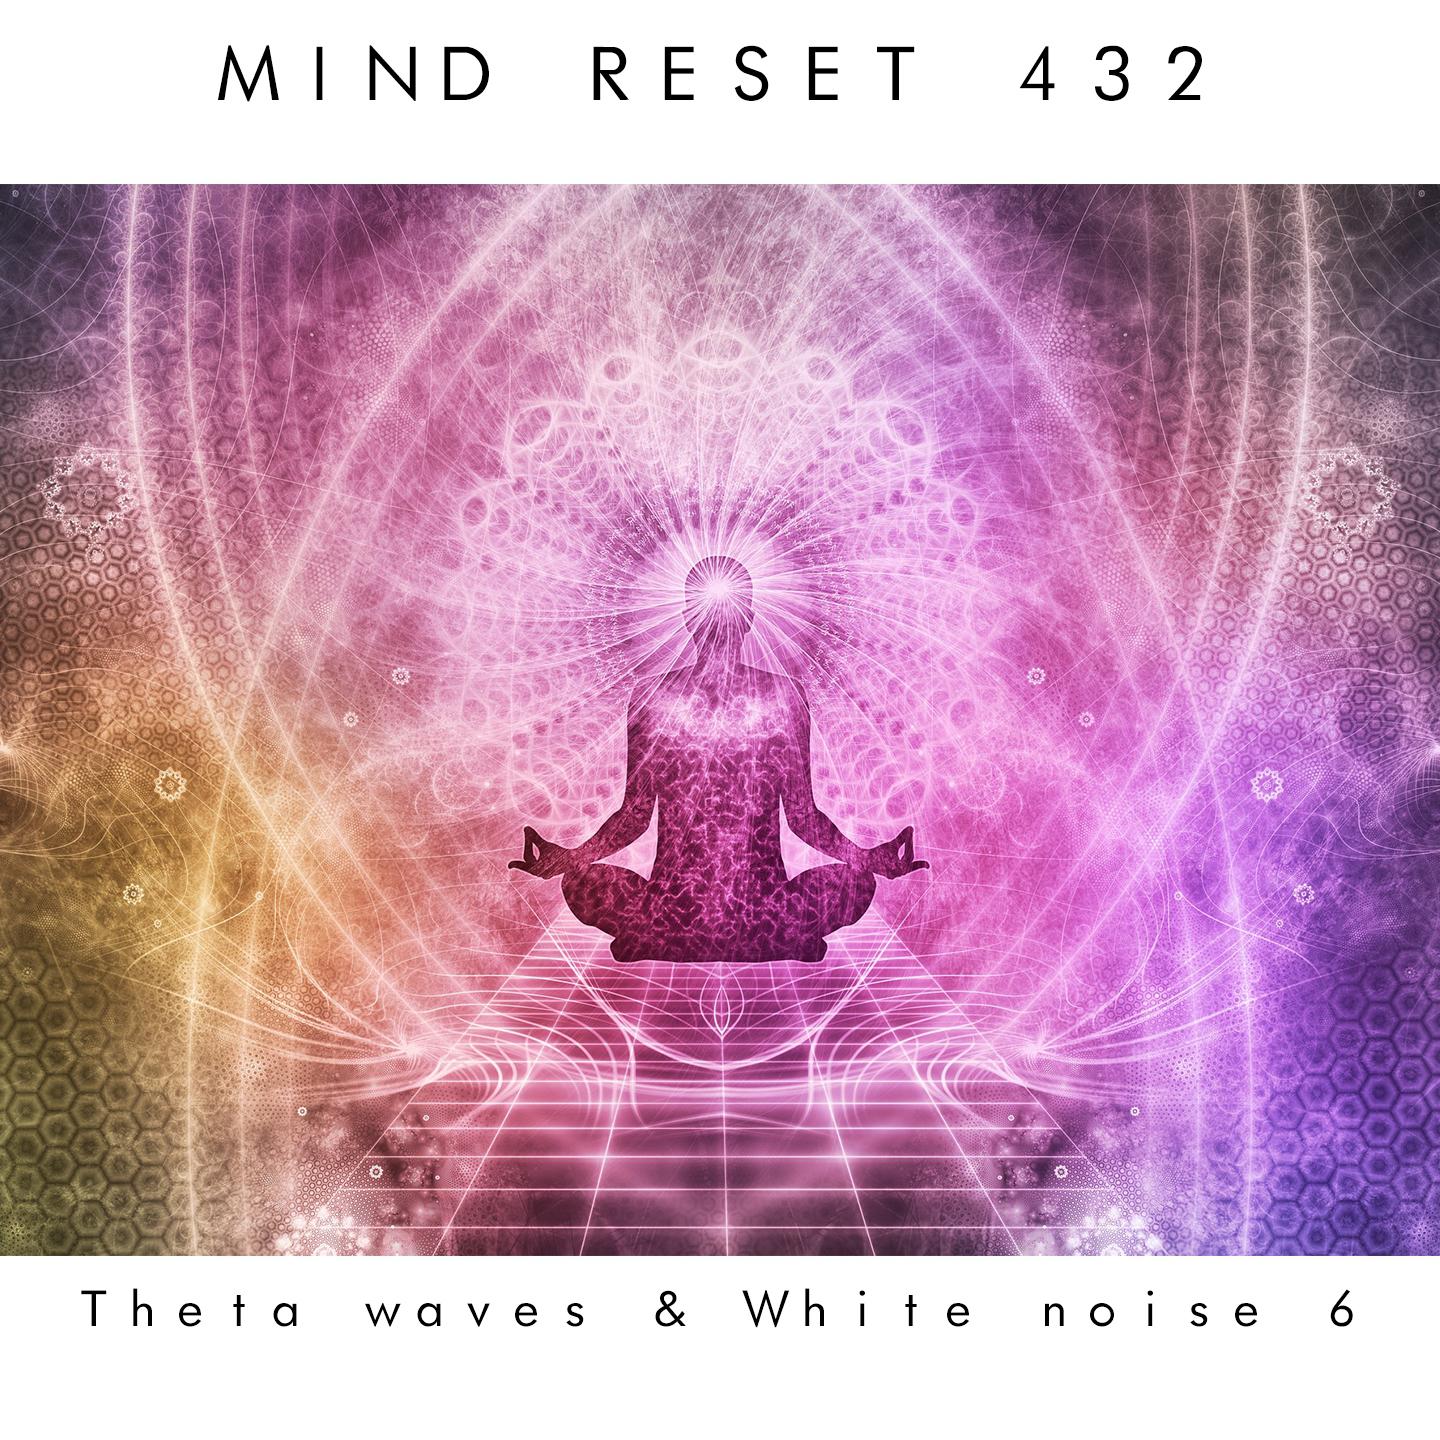 Theta waves & white noise 6